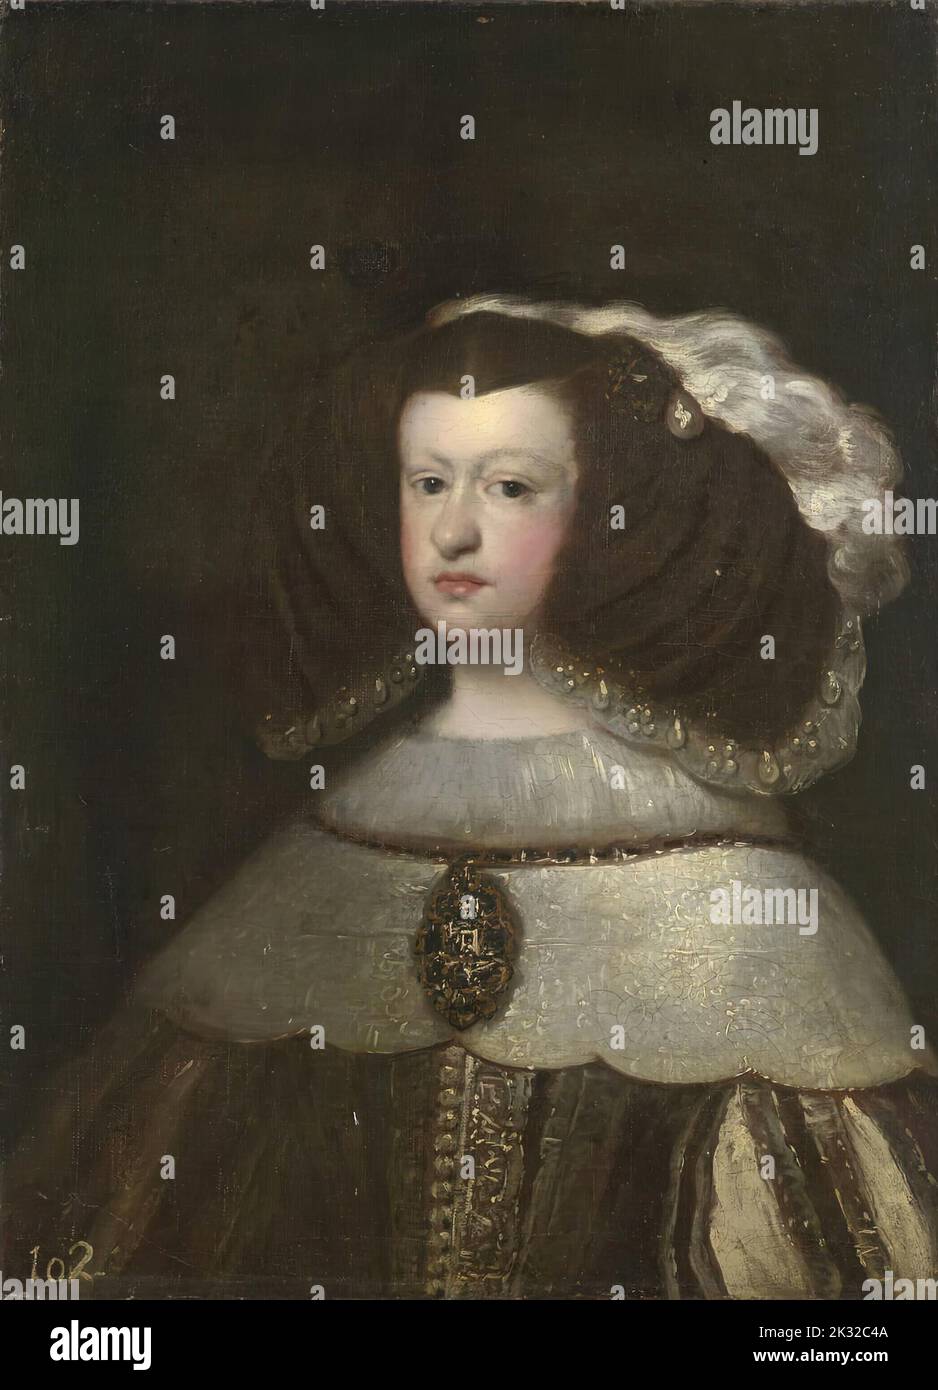 Portrait de Marie-Anne d'Autriche (1634-1696), reine d'Espagne. Stock Photo